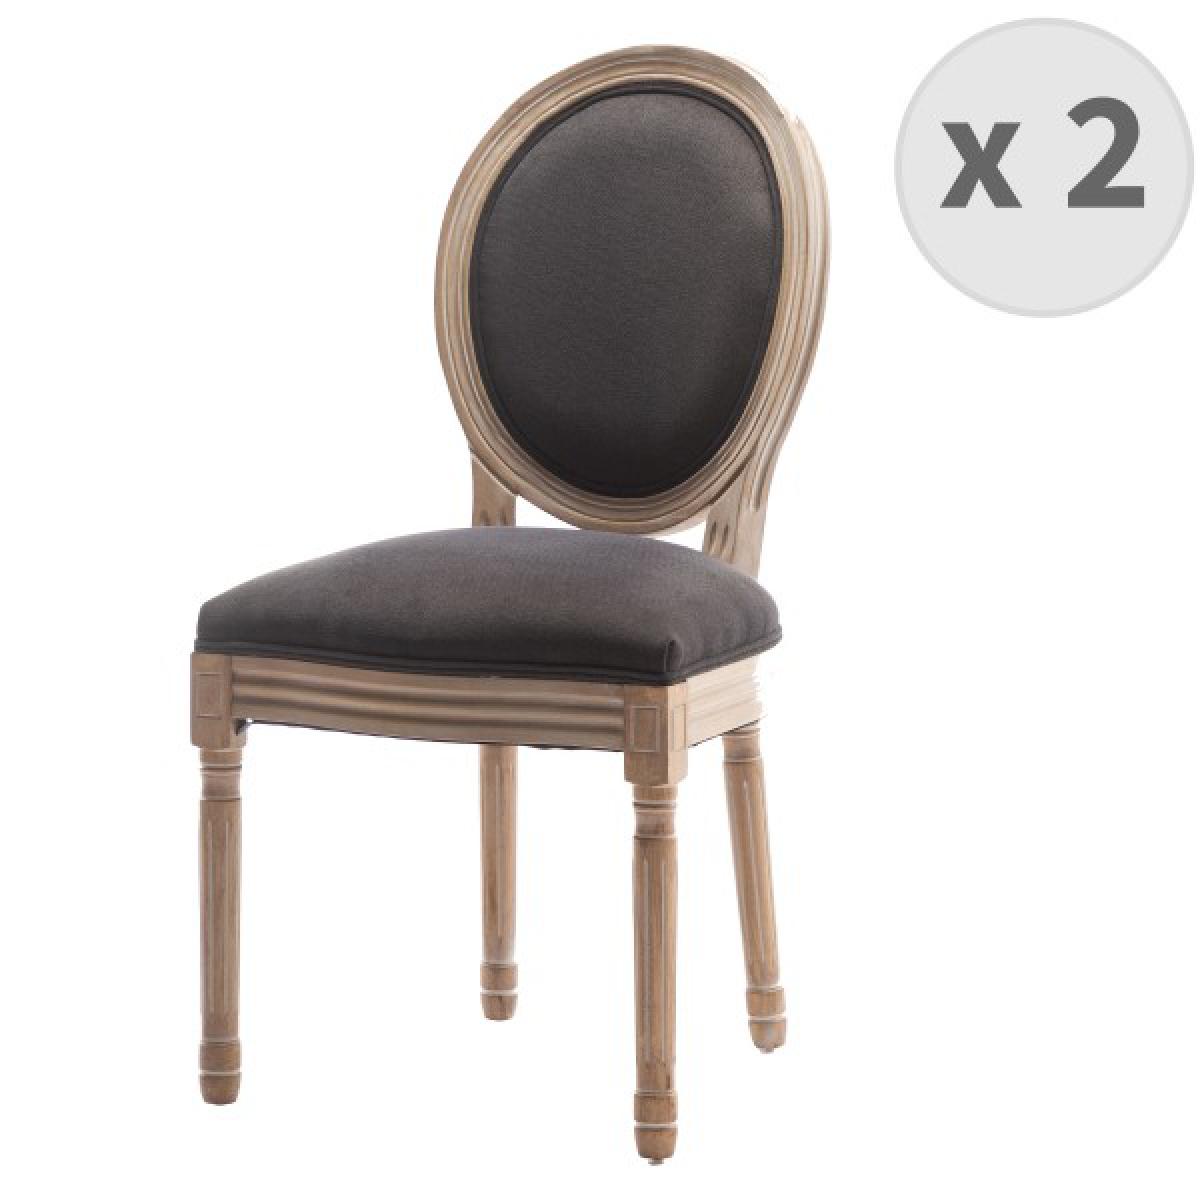 Moloo - GRETA Lot de 2 chaises de salle a manger - Pied bois - Tissu Gris - L 49 x P 56 x H 96 cm - Chaises